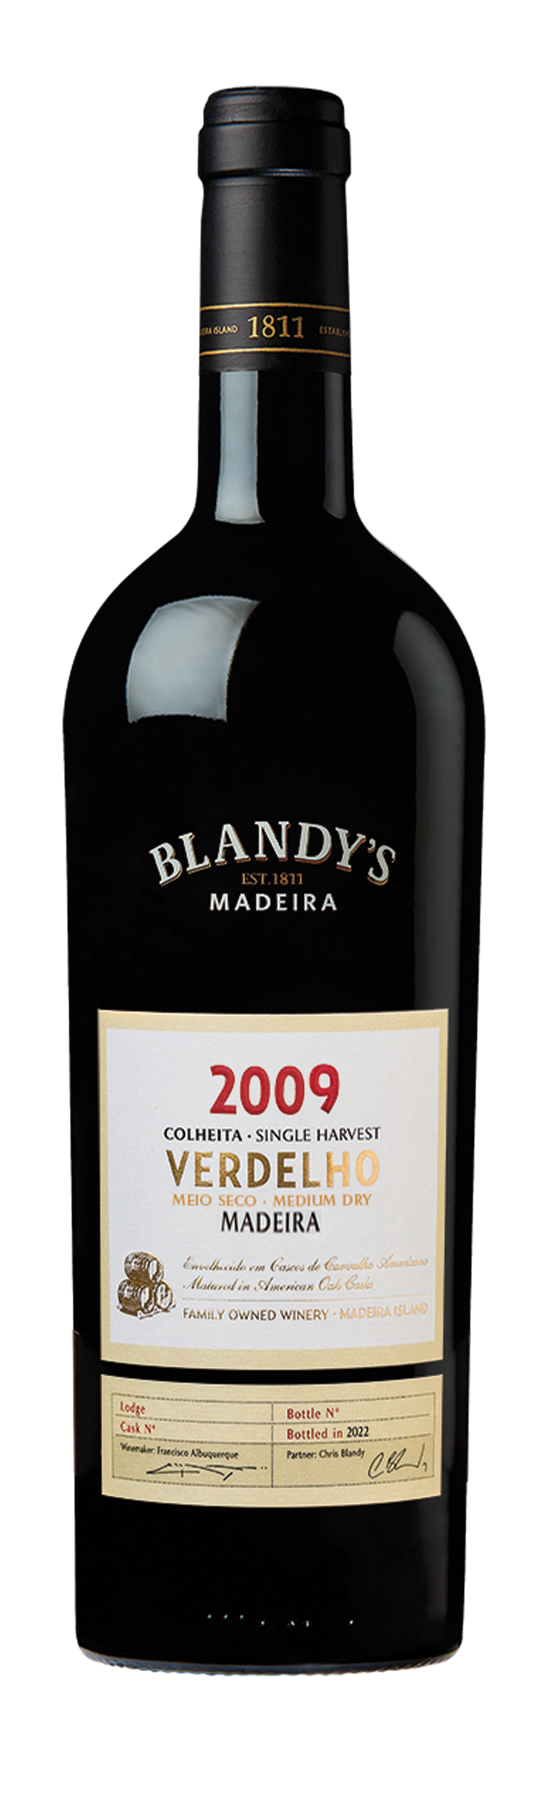 Blandy's Verdelho Vintage 20% 2009 75cl Madeira